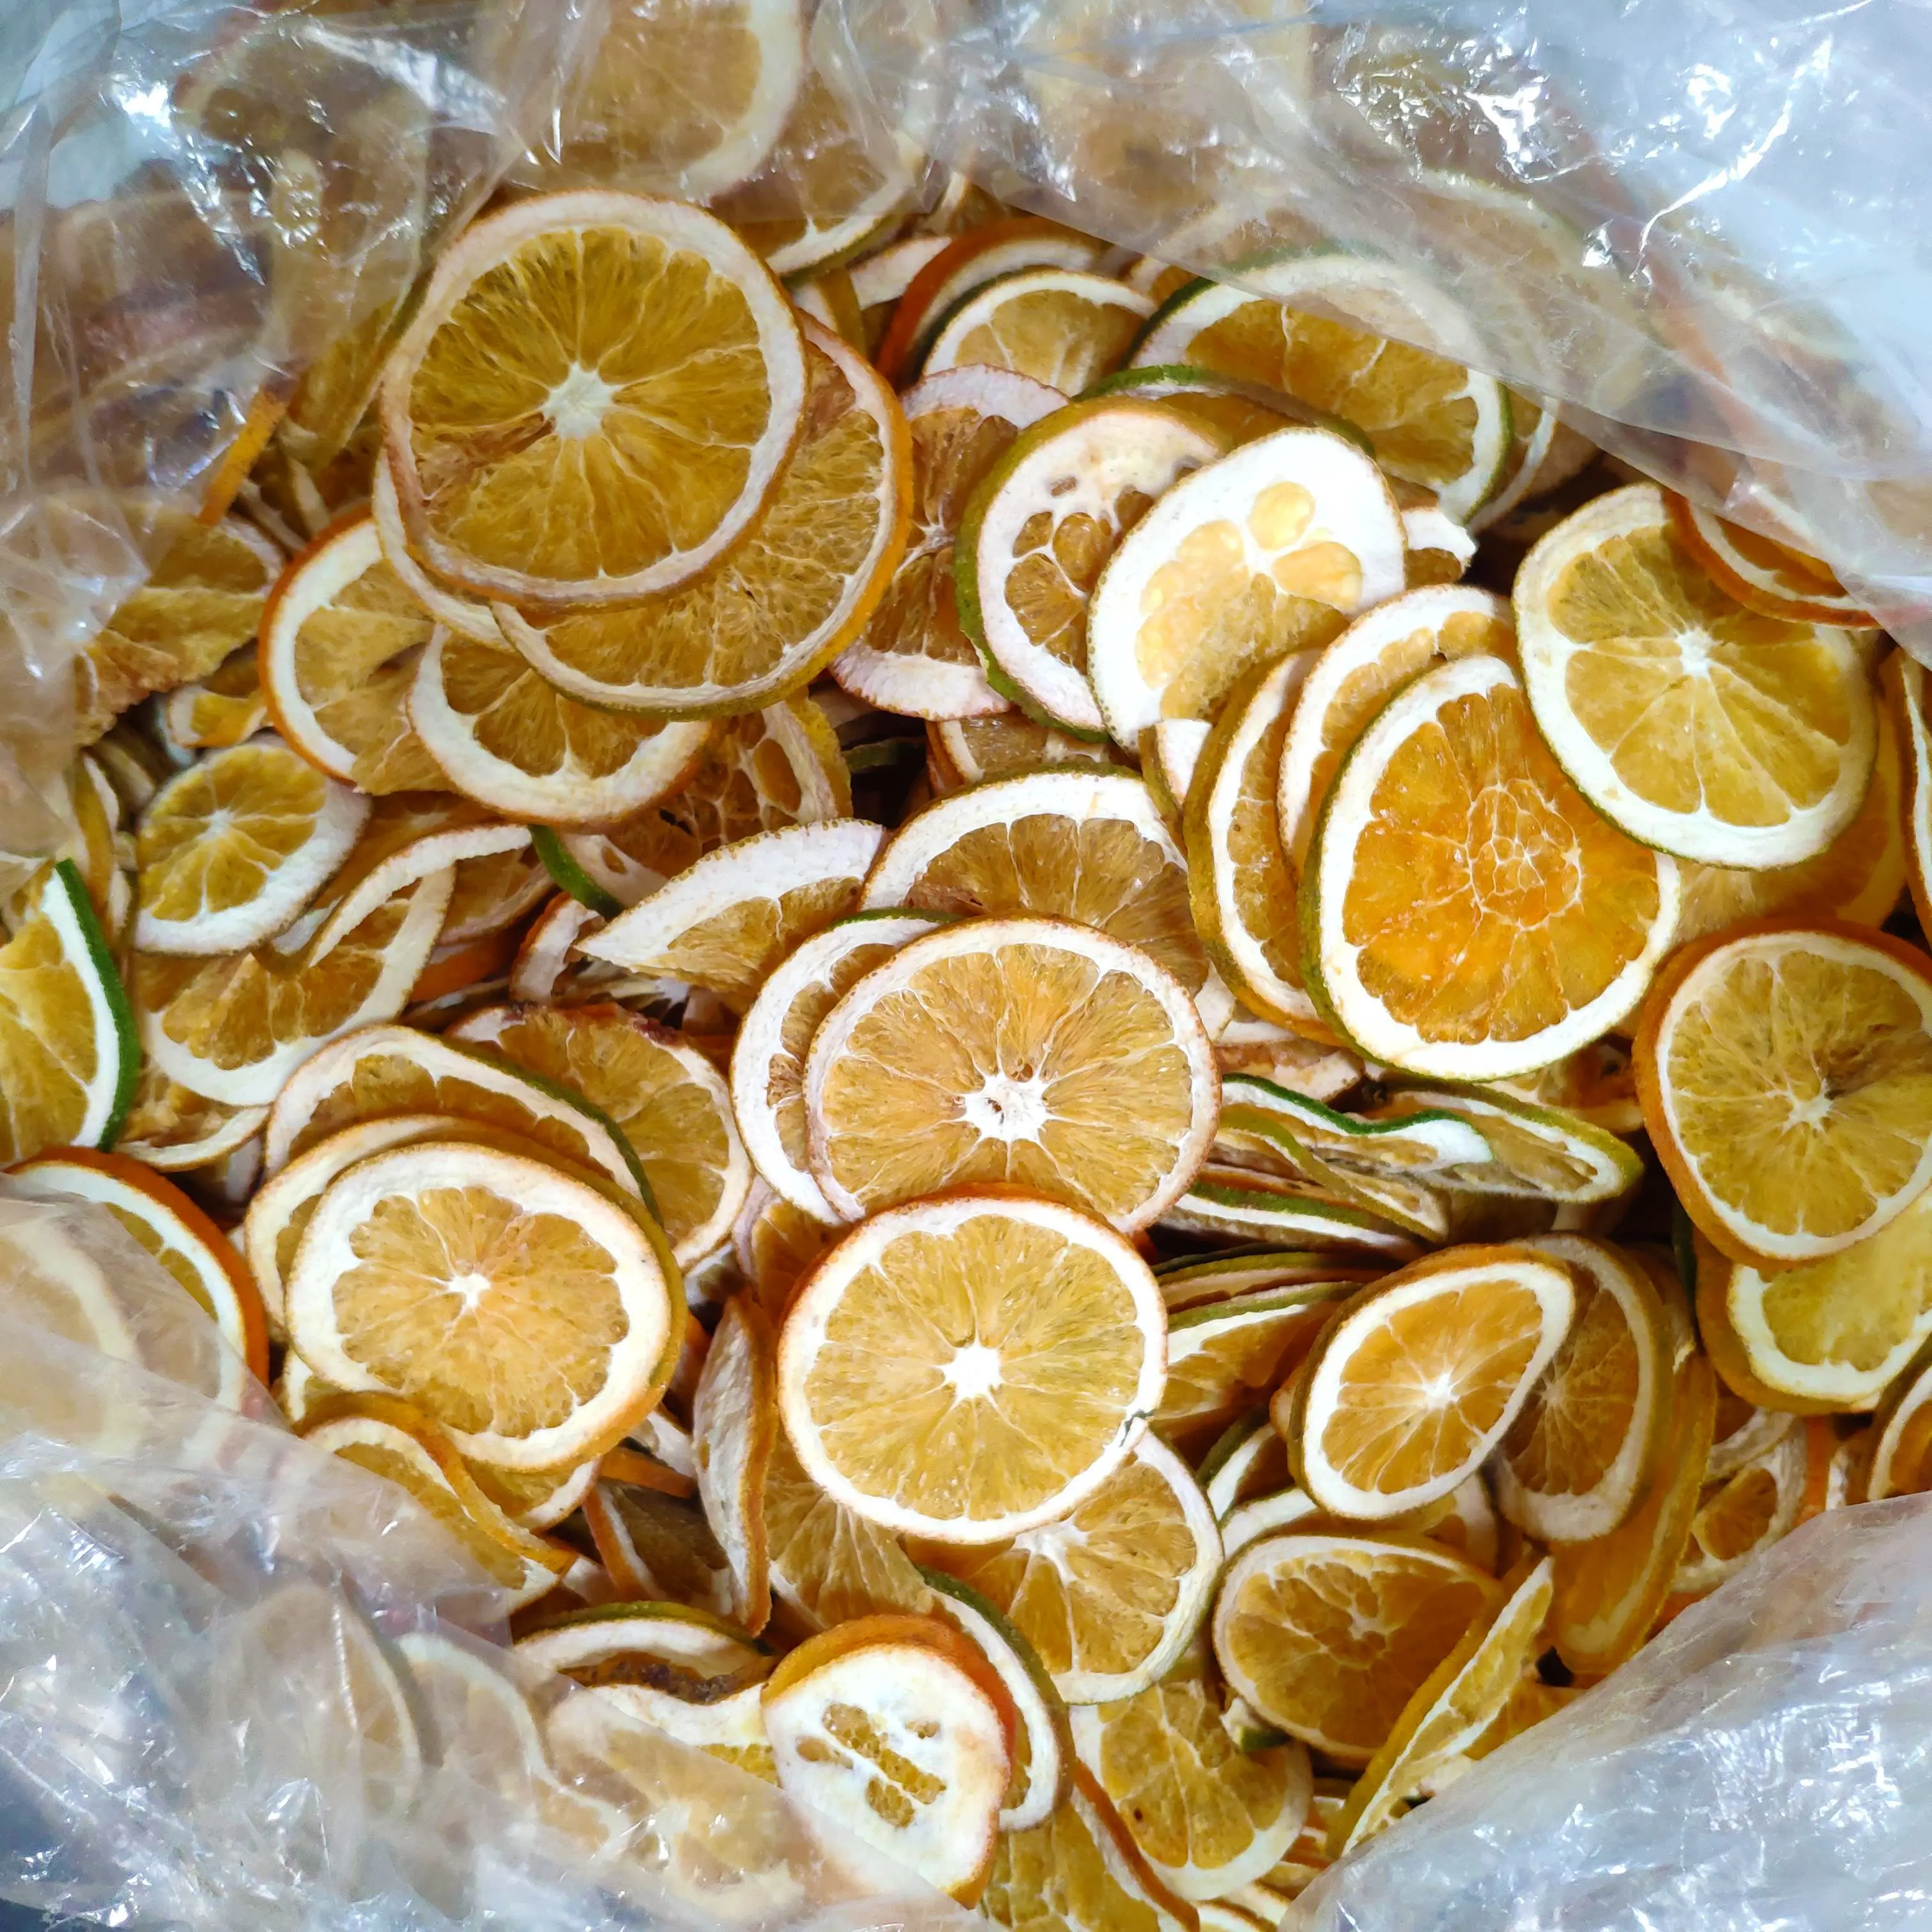 Chino Natural frutas secas estándar de la UE de té de fruta Honeysweet naranja seca rodajas de fruta